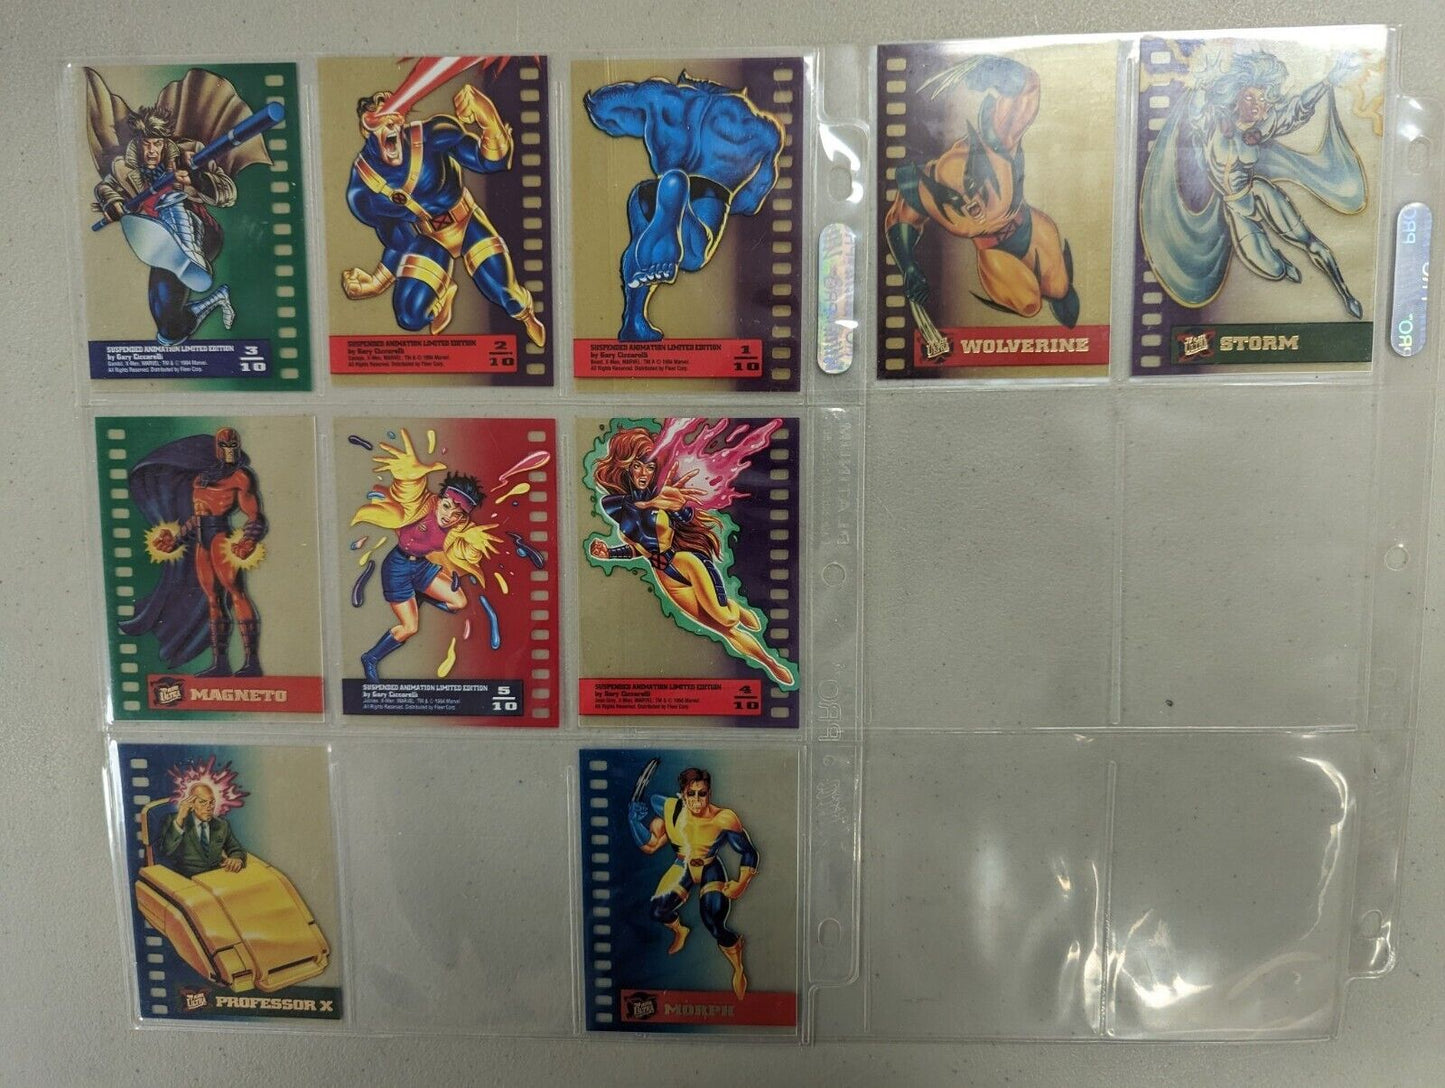 1994 Marvel X-Men Suspended Animation Limited Edition 10/10 Complete Set Fleer